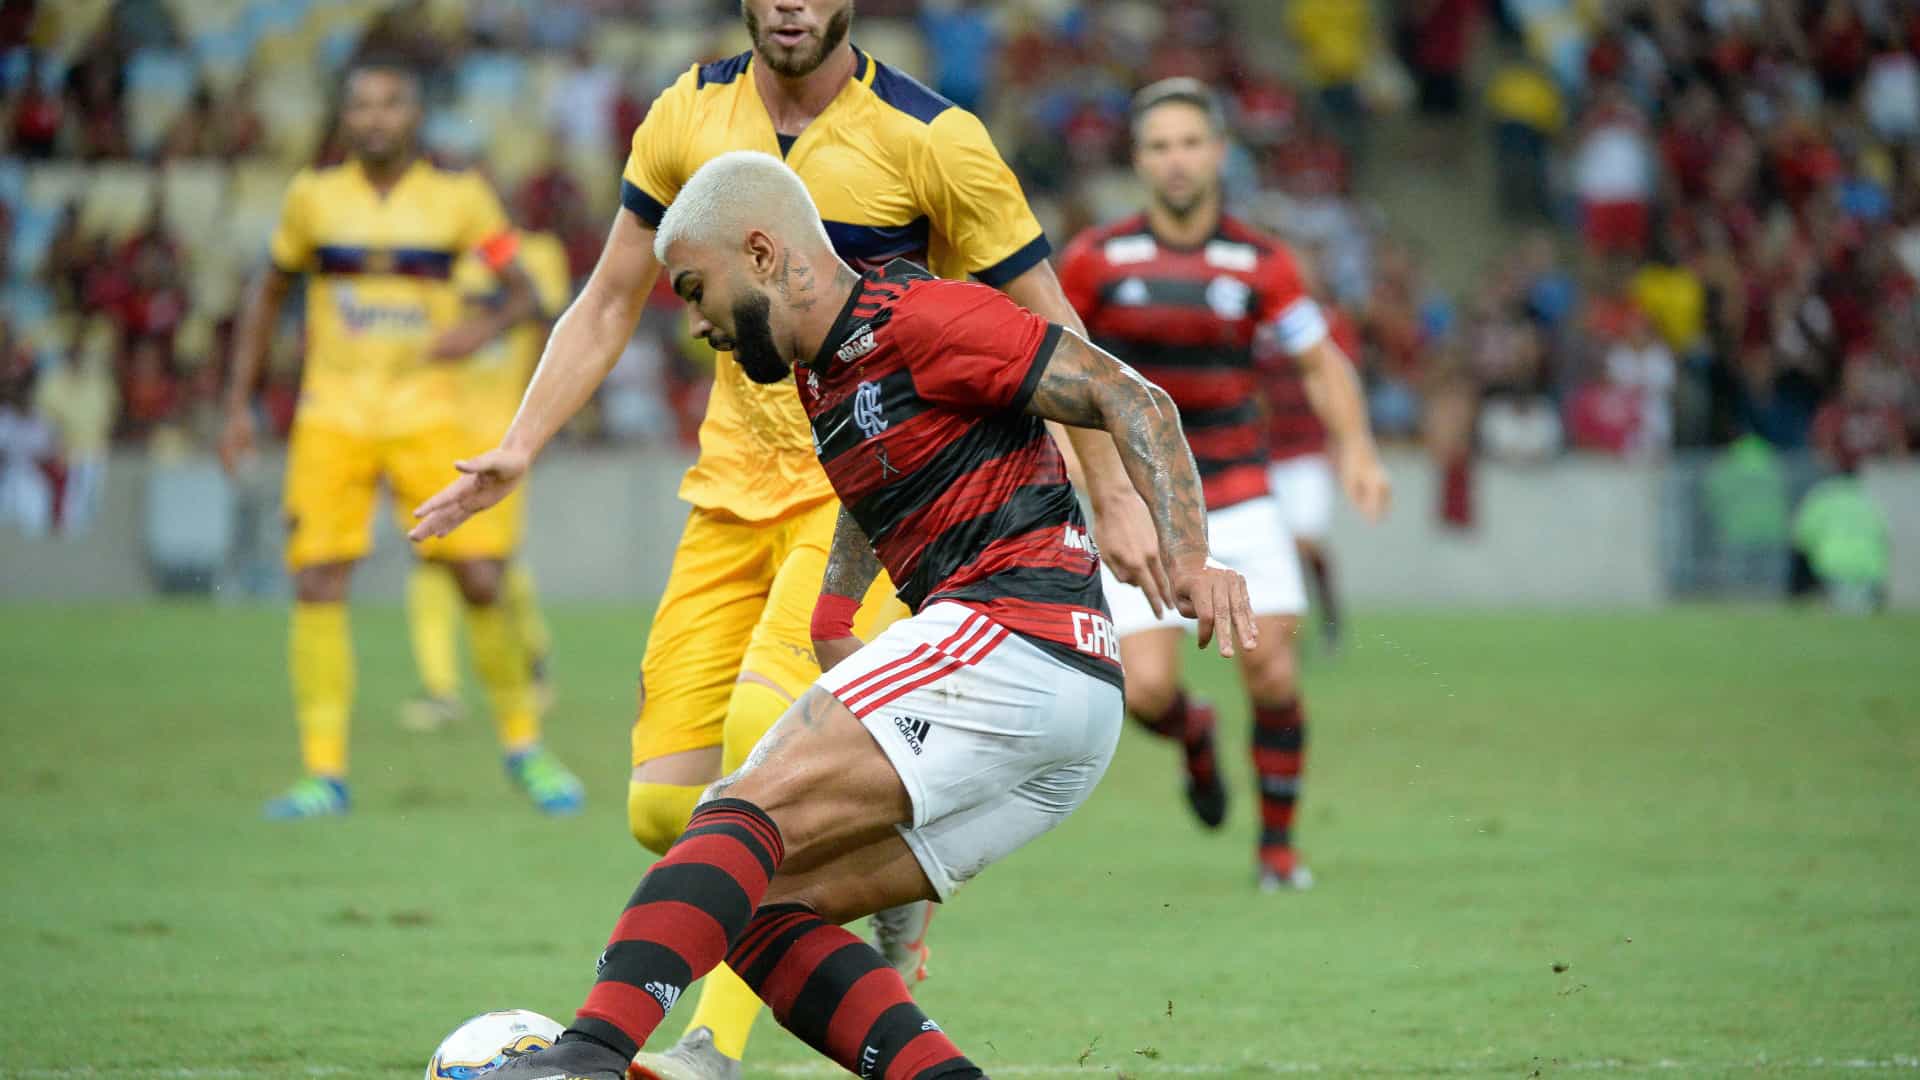 Soi-keo-Flamengo-vs-Goias